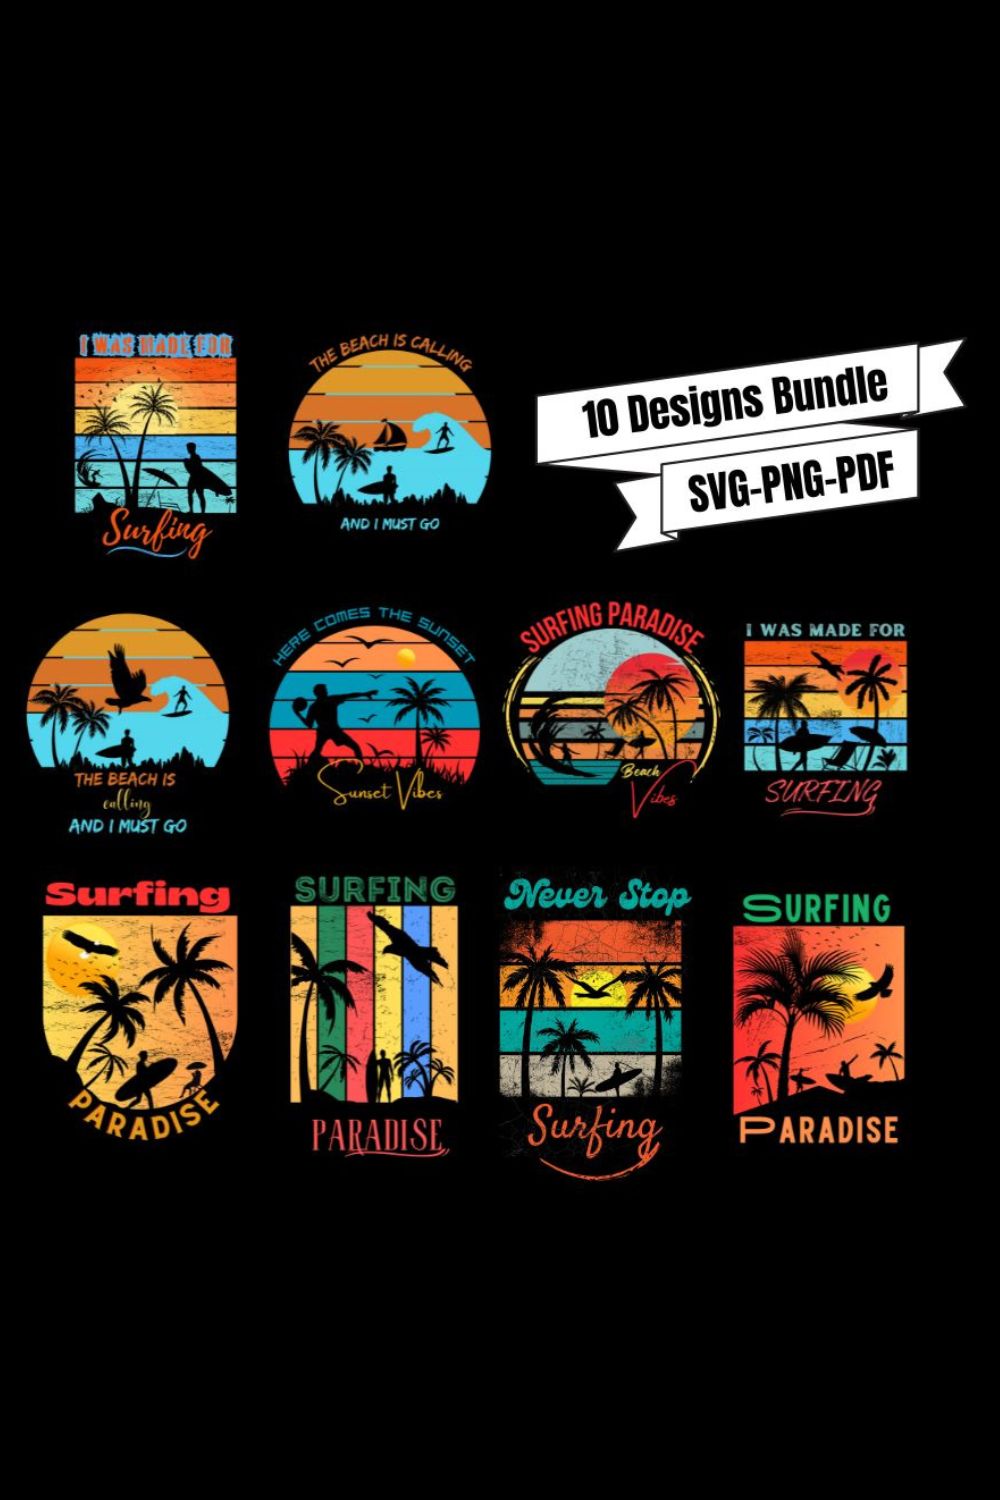 Surfing Paradise Design Bundle pinterest preview image.